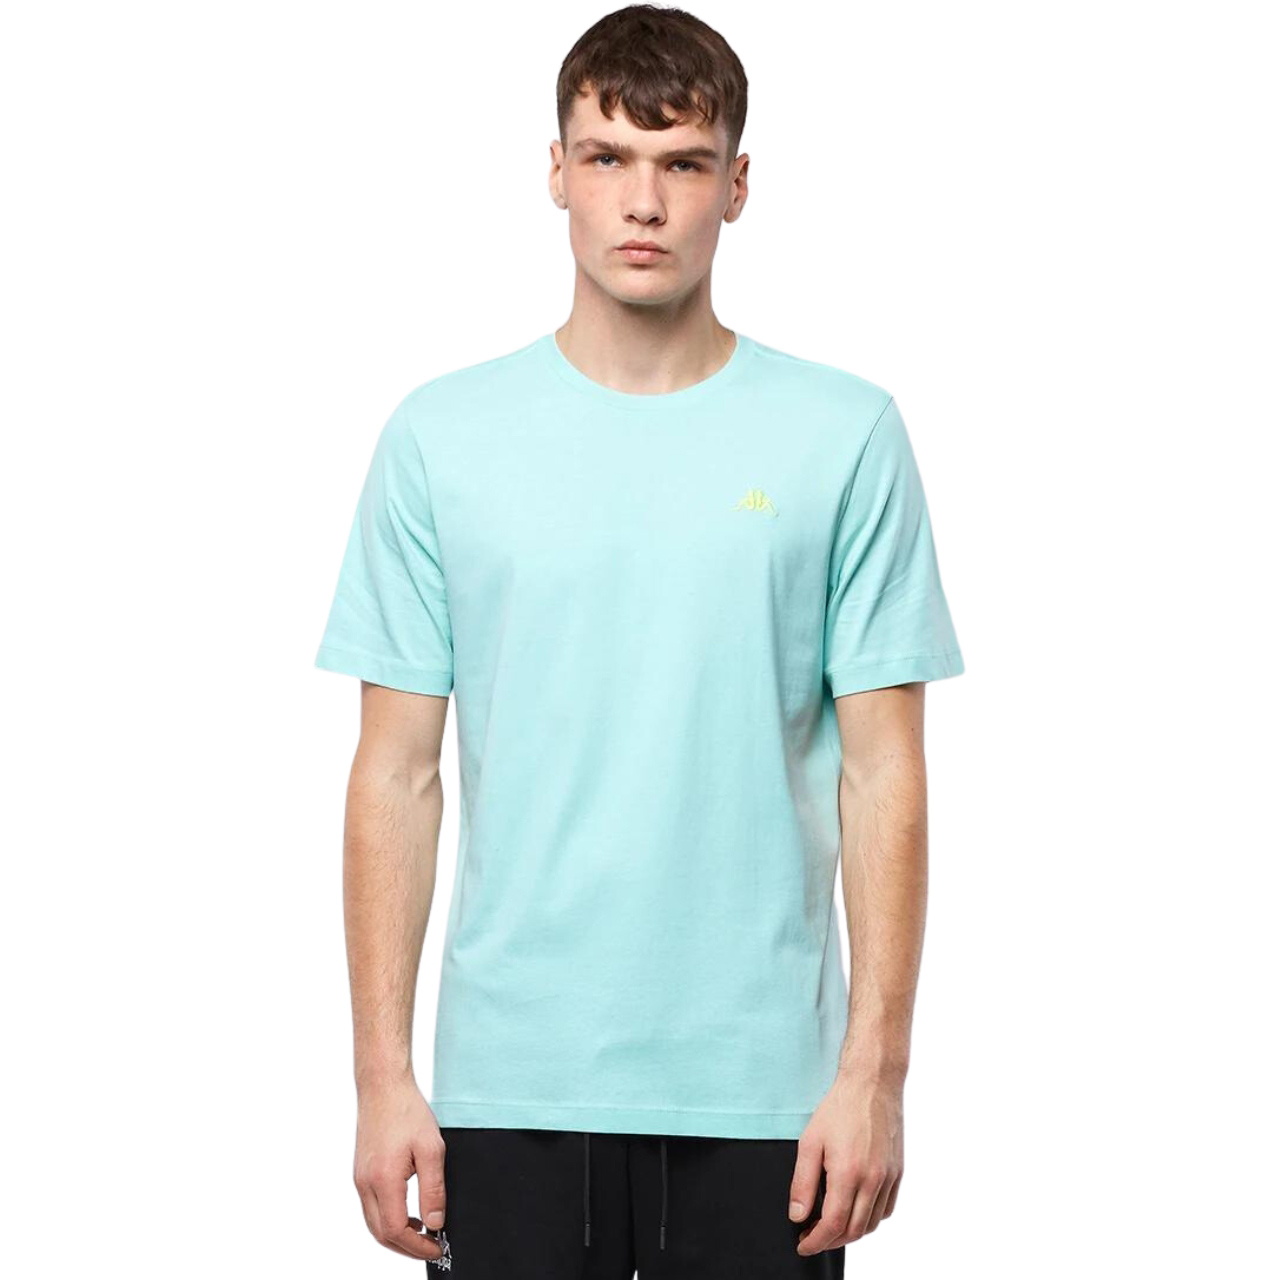 Koszulka męska Kappa błękitna 313002 14-4809 » Mężczyzna » Odzież męska » Koszulki - internetowy MaxxxSport